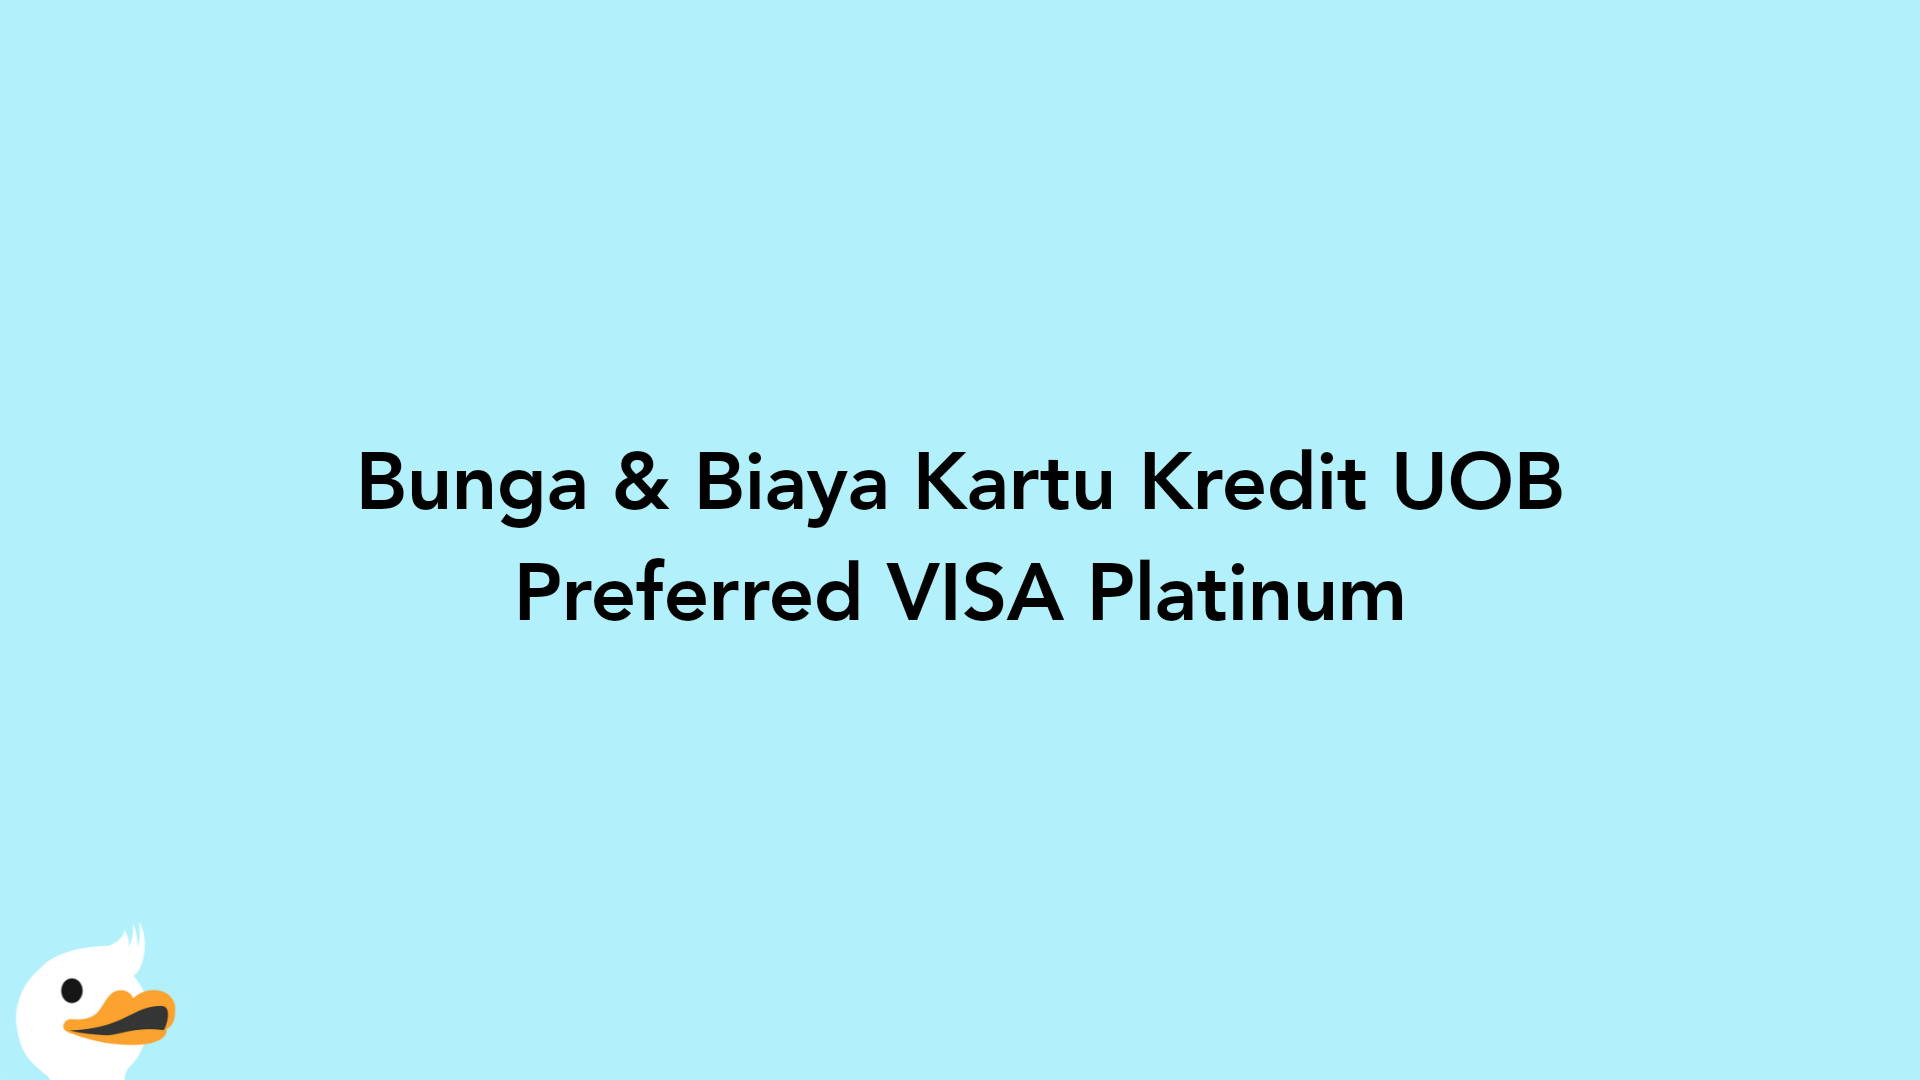 Bunga & Biaya Kartu Kredit UOB Preferred VISA Platinum